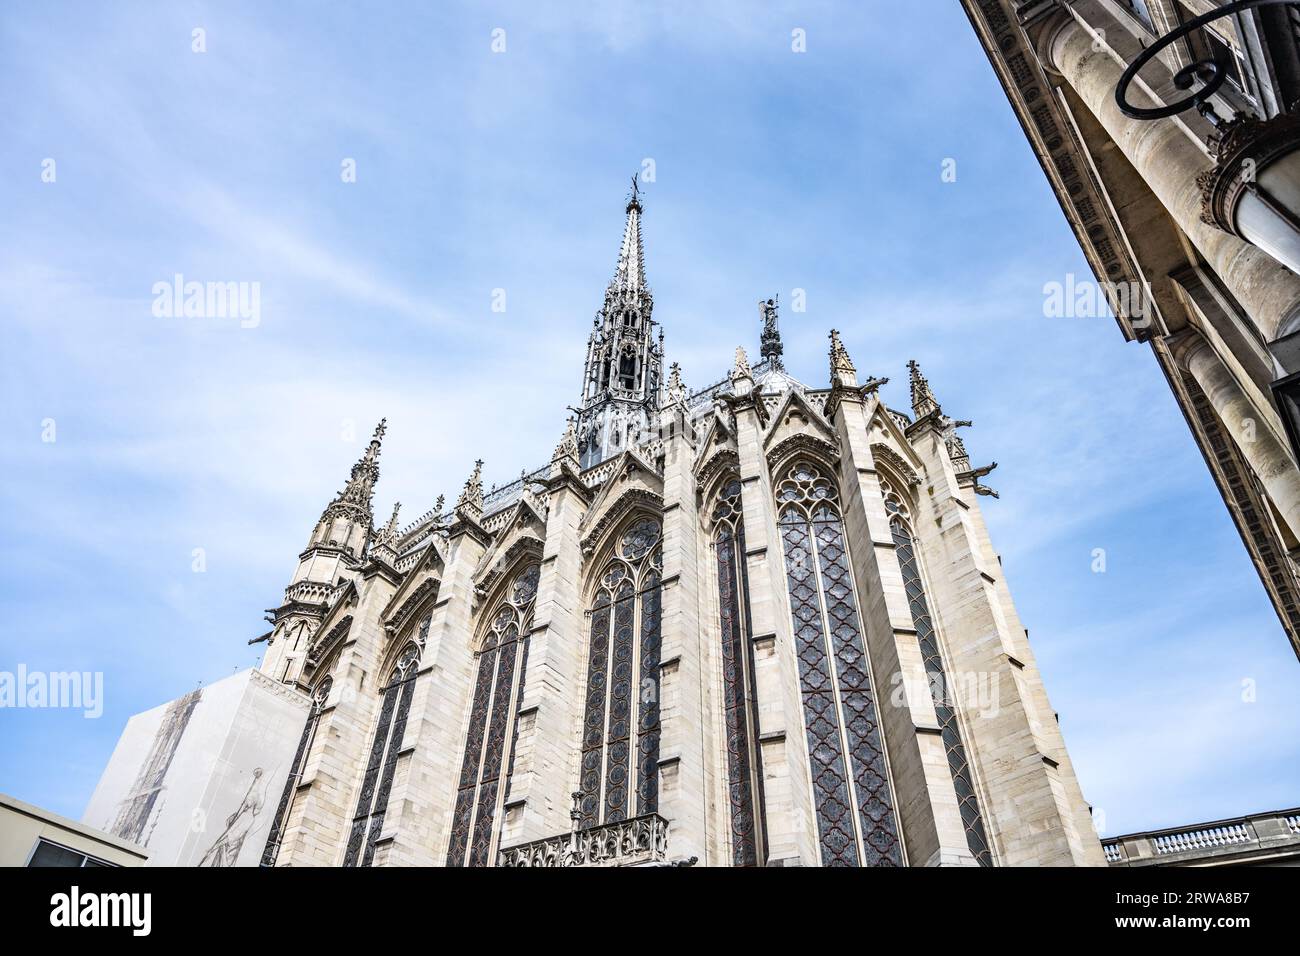 Exterior of Sainte-Chapelle with narrow and spiky spire. Palais de la Cite, Paris, France Stock Photo